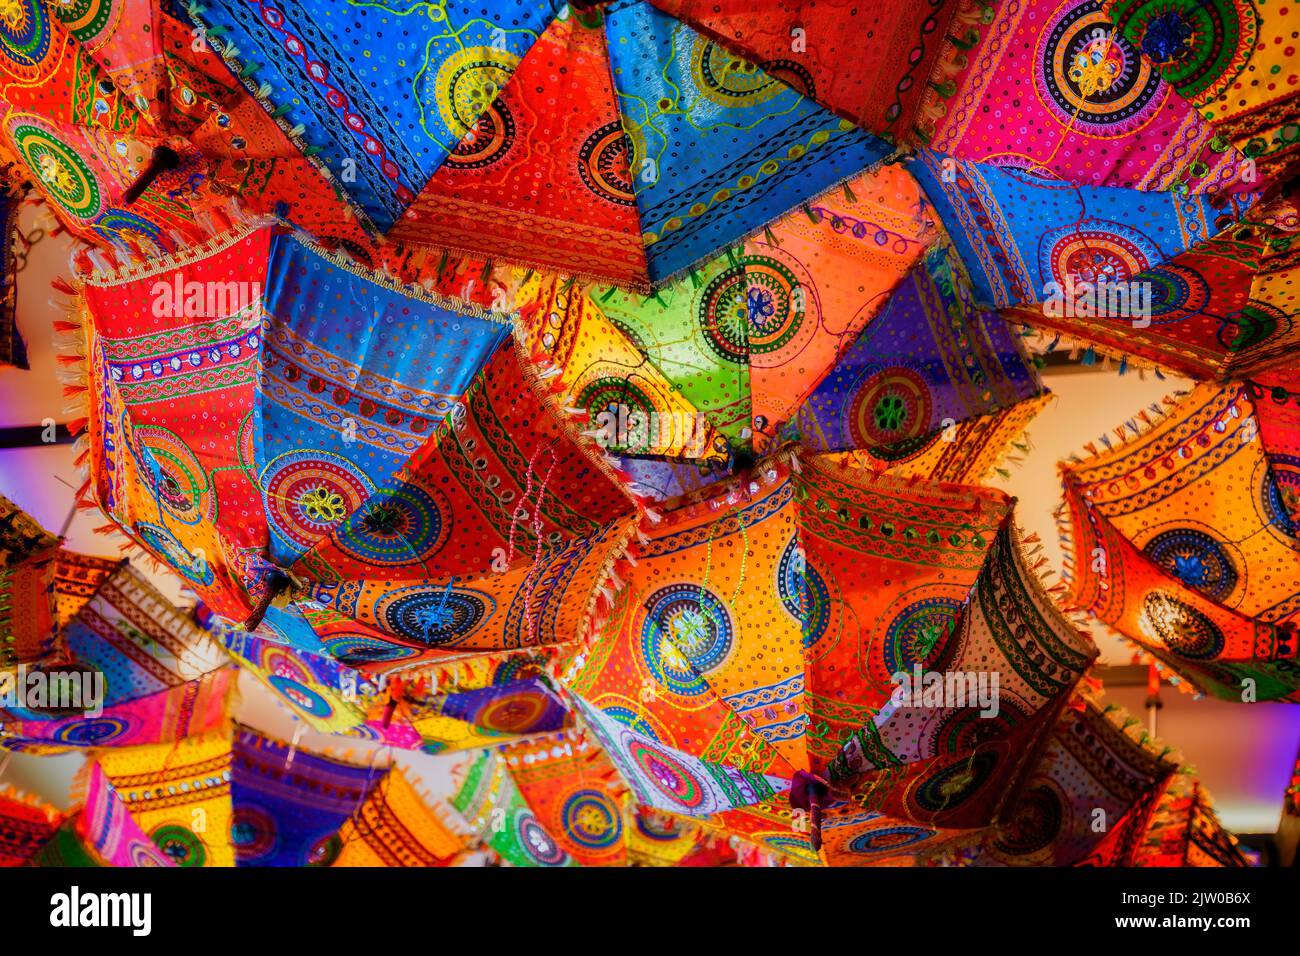 Un montón de coloridas sombrillas cuelgan de un techo iluminado, Foto de stock